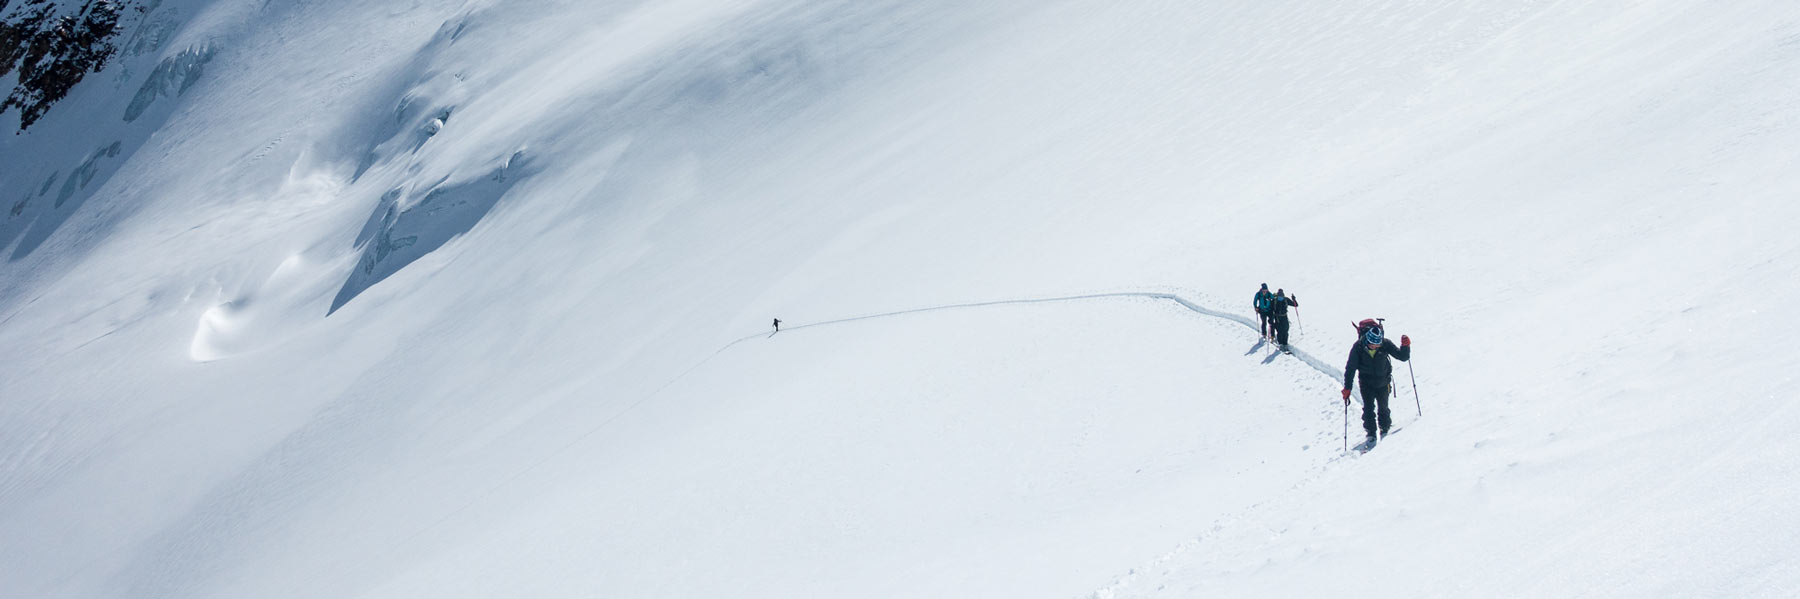 Perfekte Skihochtourenbedingungen im April am Bärenbartferner, Langtauferer Tal